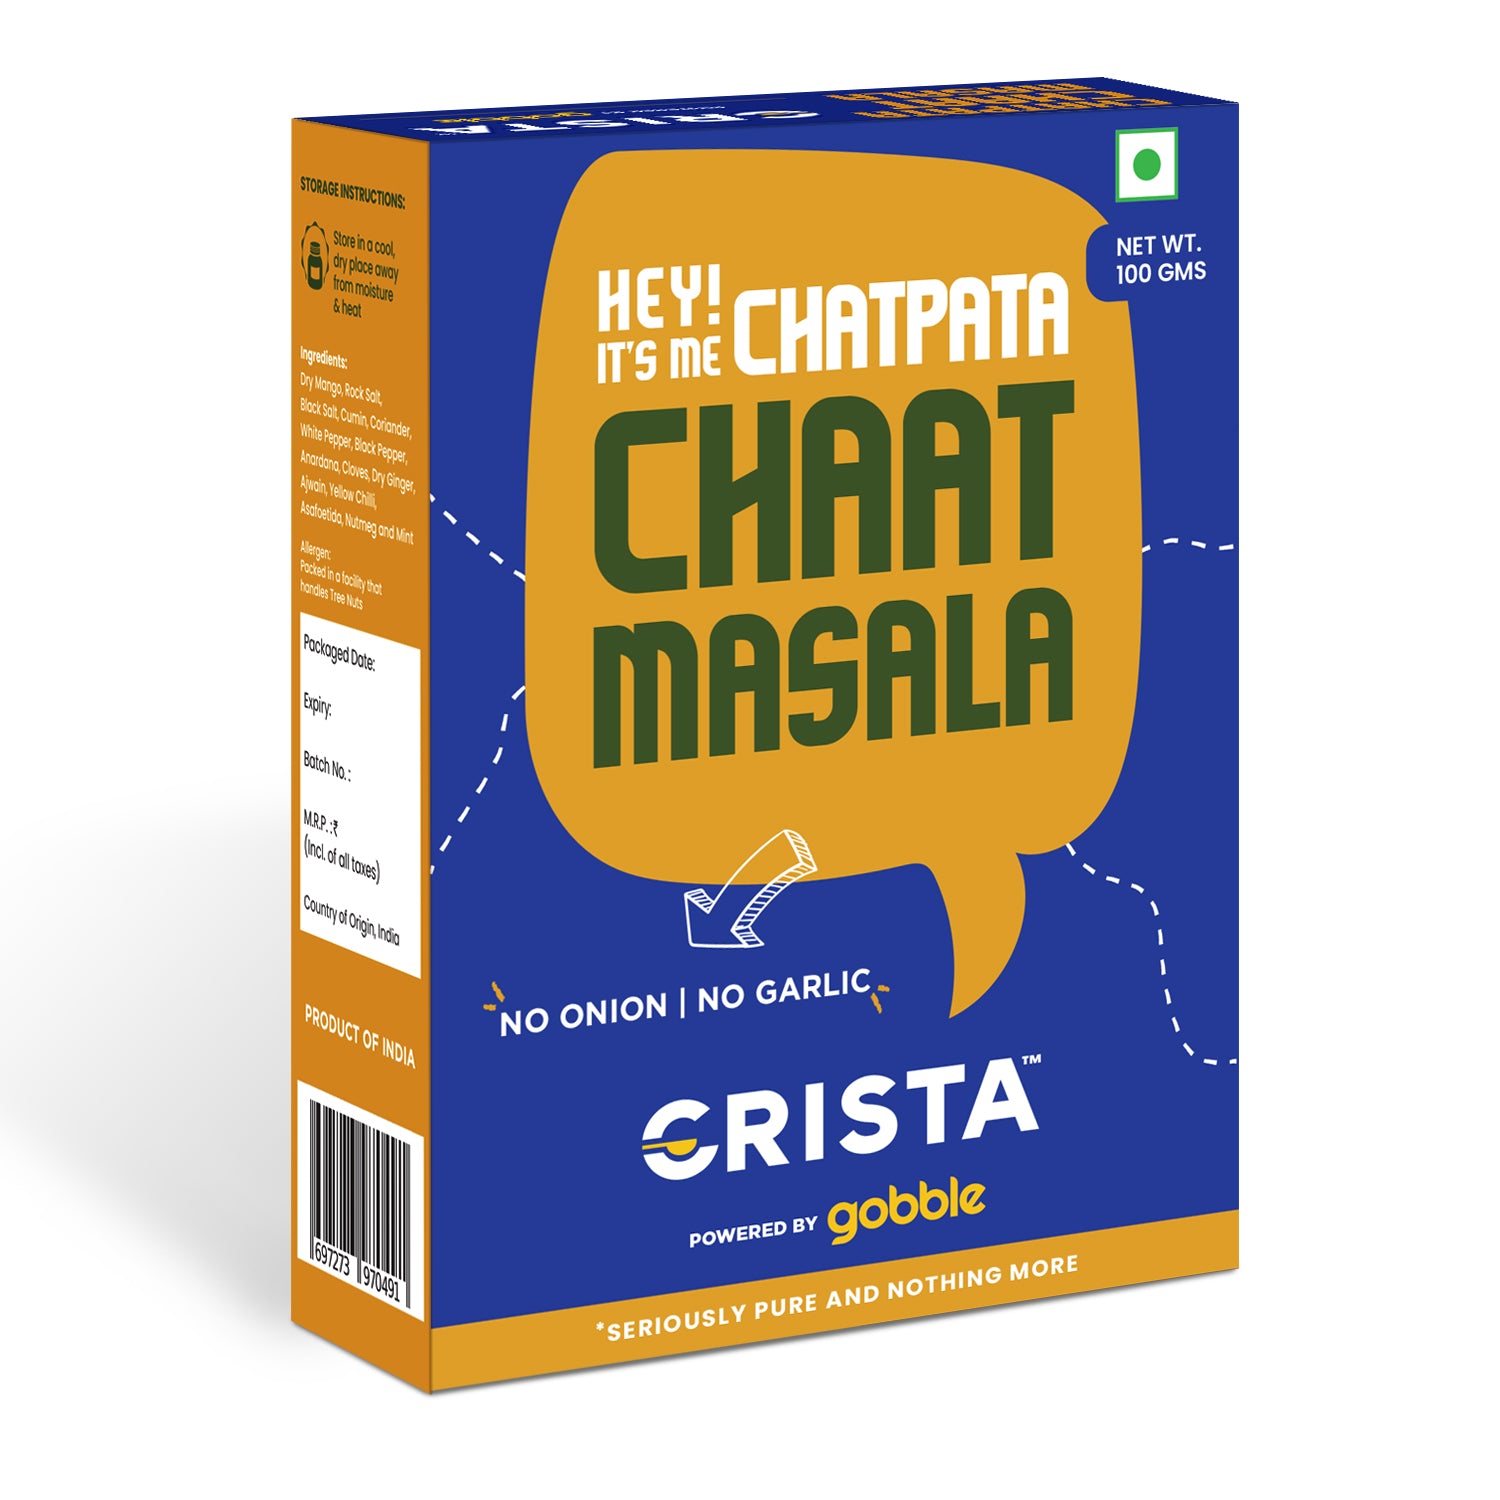 CRISTA Chatpata Chaat Masala